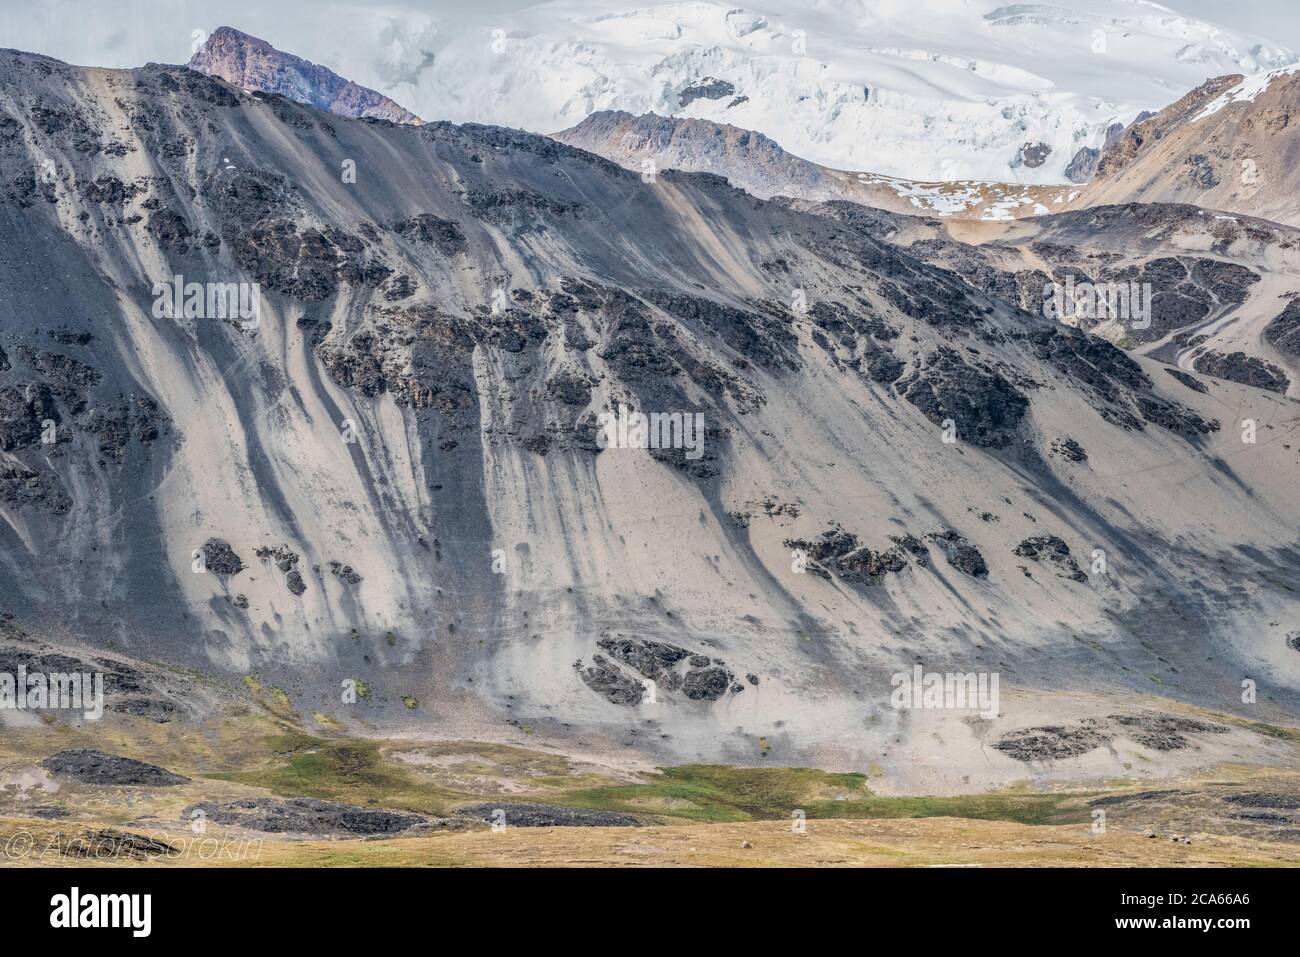 Interessante Geologie und Farben von Felsen und Sand sorgen für einen schönen Blick auf die Berge hoch in den peruanischen Anden in der Cordillera Vilcanota. Stockfoto